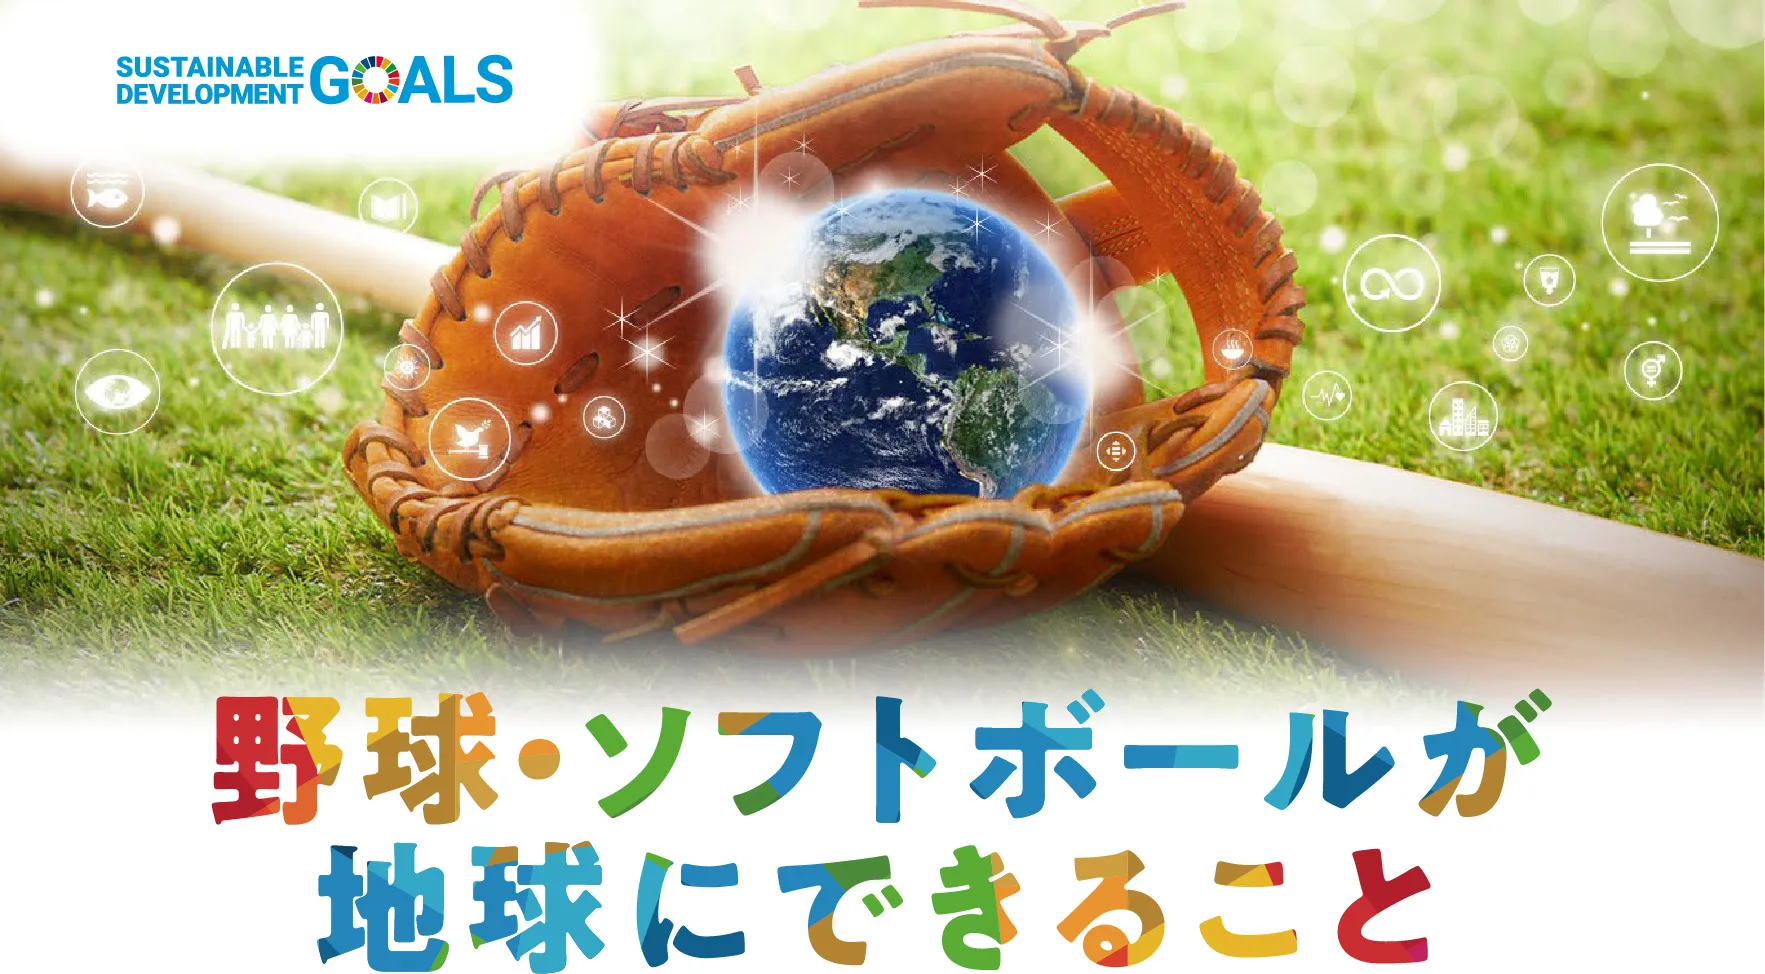 野球・ソフトボールが地球にできること。リサイクル商品とSDGs活動の紹介。「テーブルウエア」